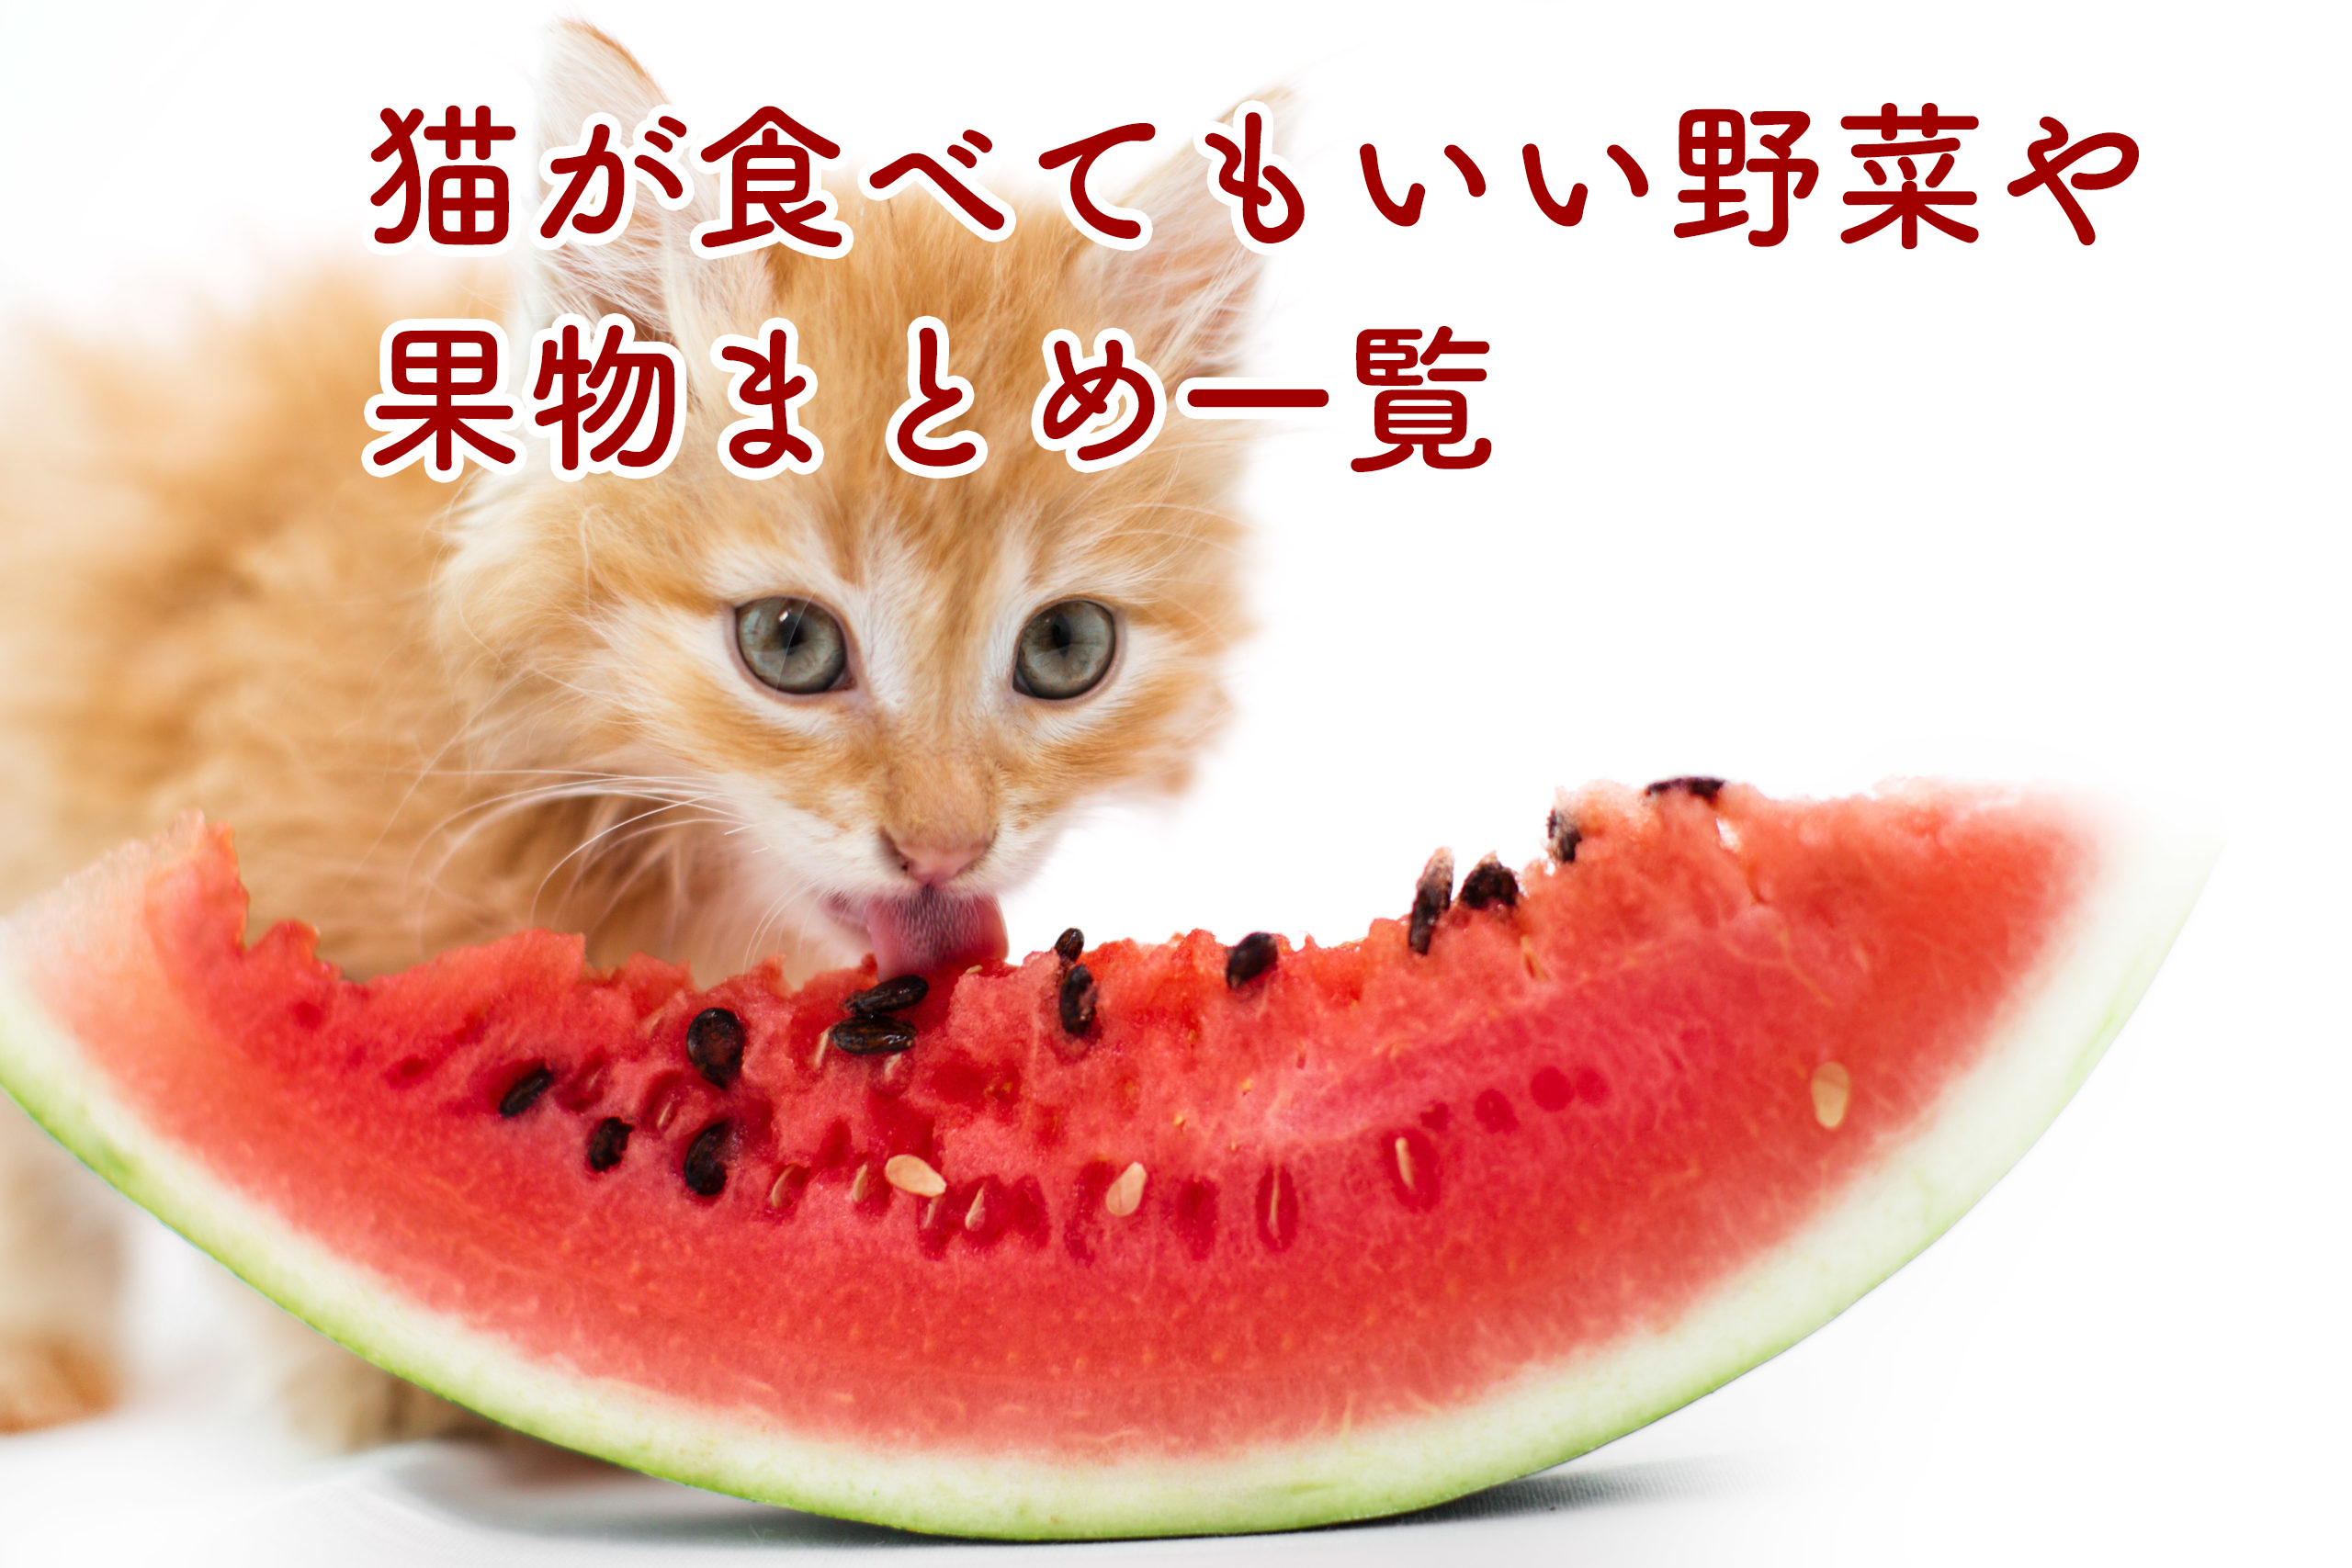 ペットグッズ屋が教える猫が食べてもいい野菜や果物まとめ一覧 カワイイペット Kawaii Pets